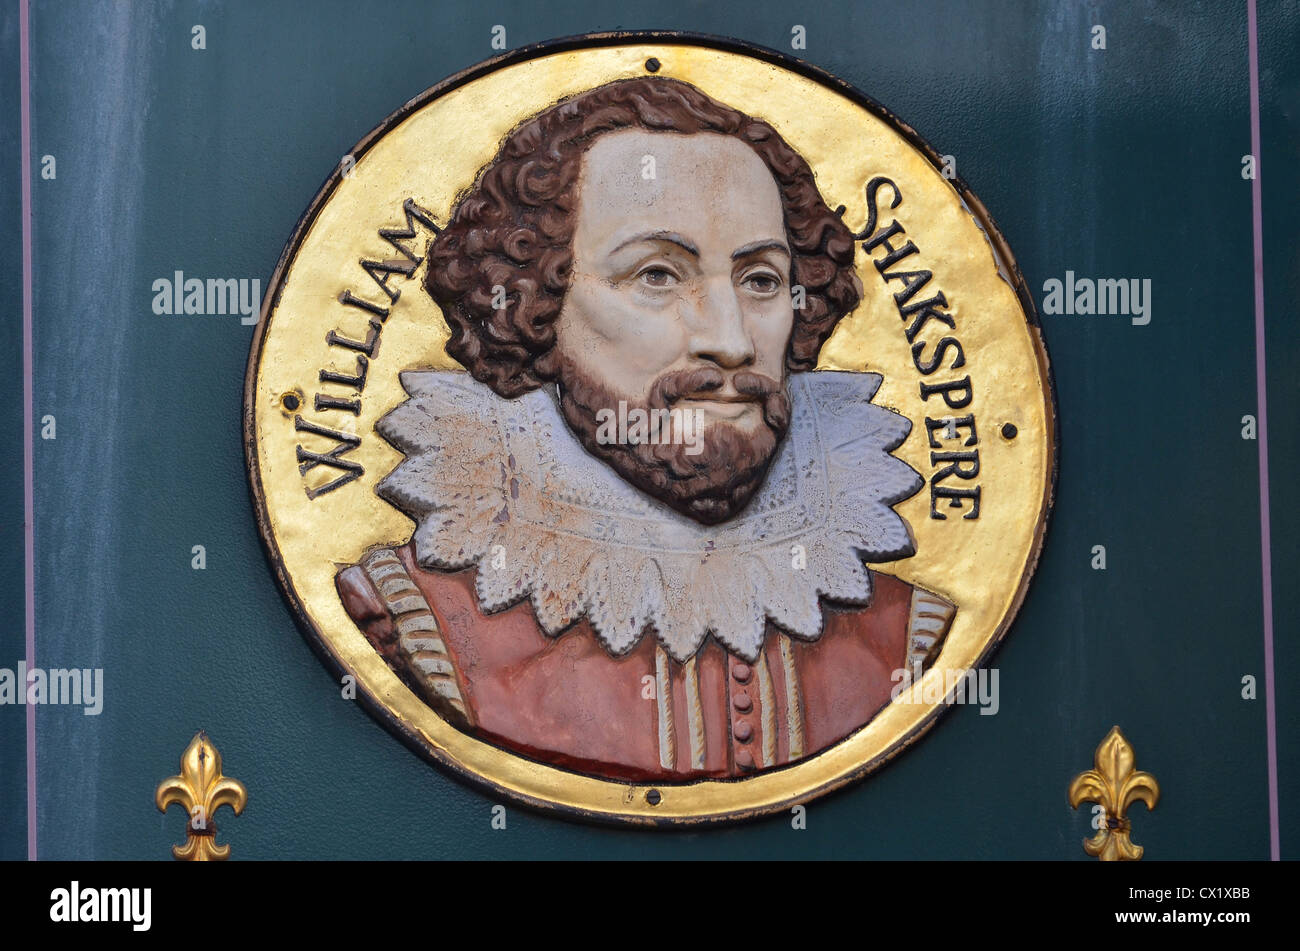 William Shakespeare ritratto, insegna, Il Shakespeare Hotel, Stratford-upon-Avon, Warwickshire, Regno Unito Foto Stock